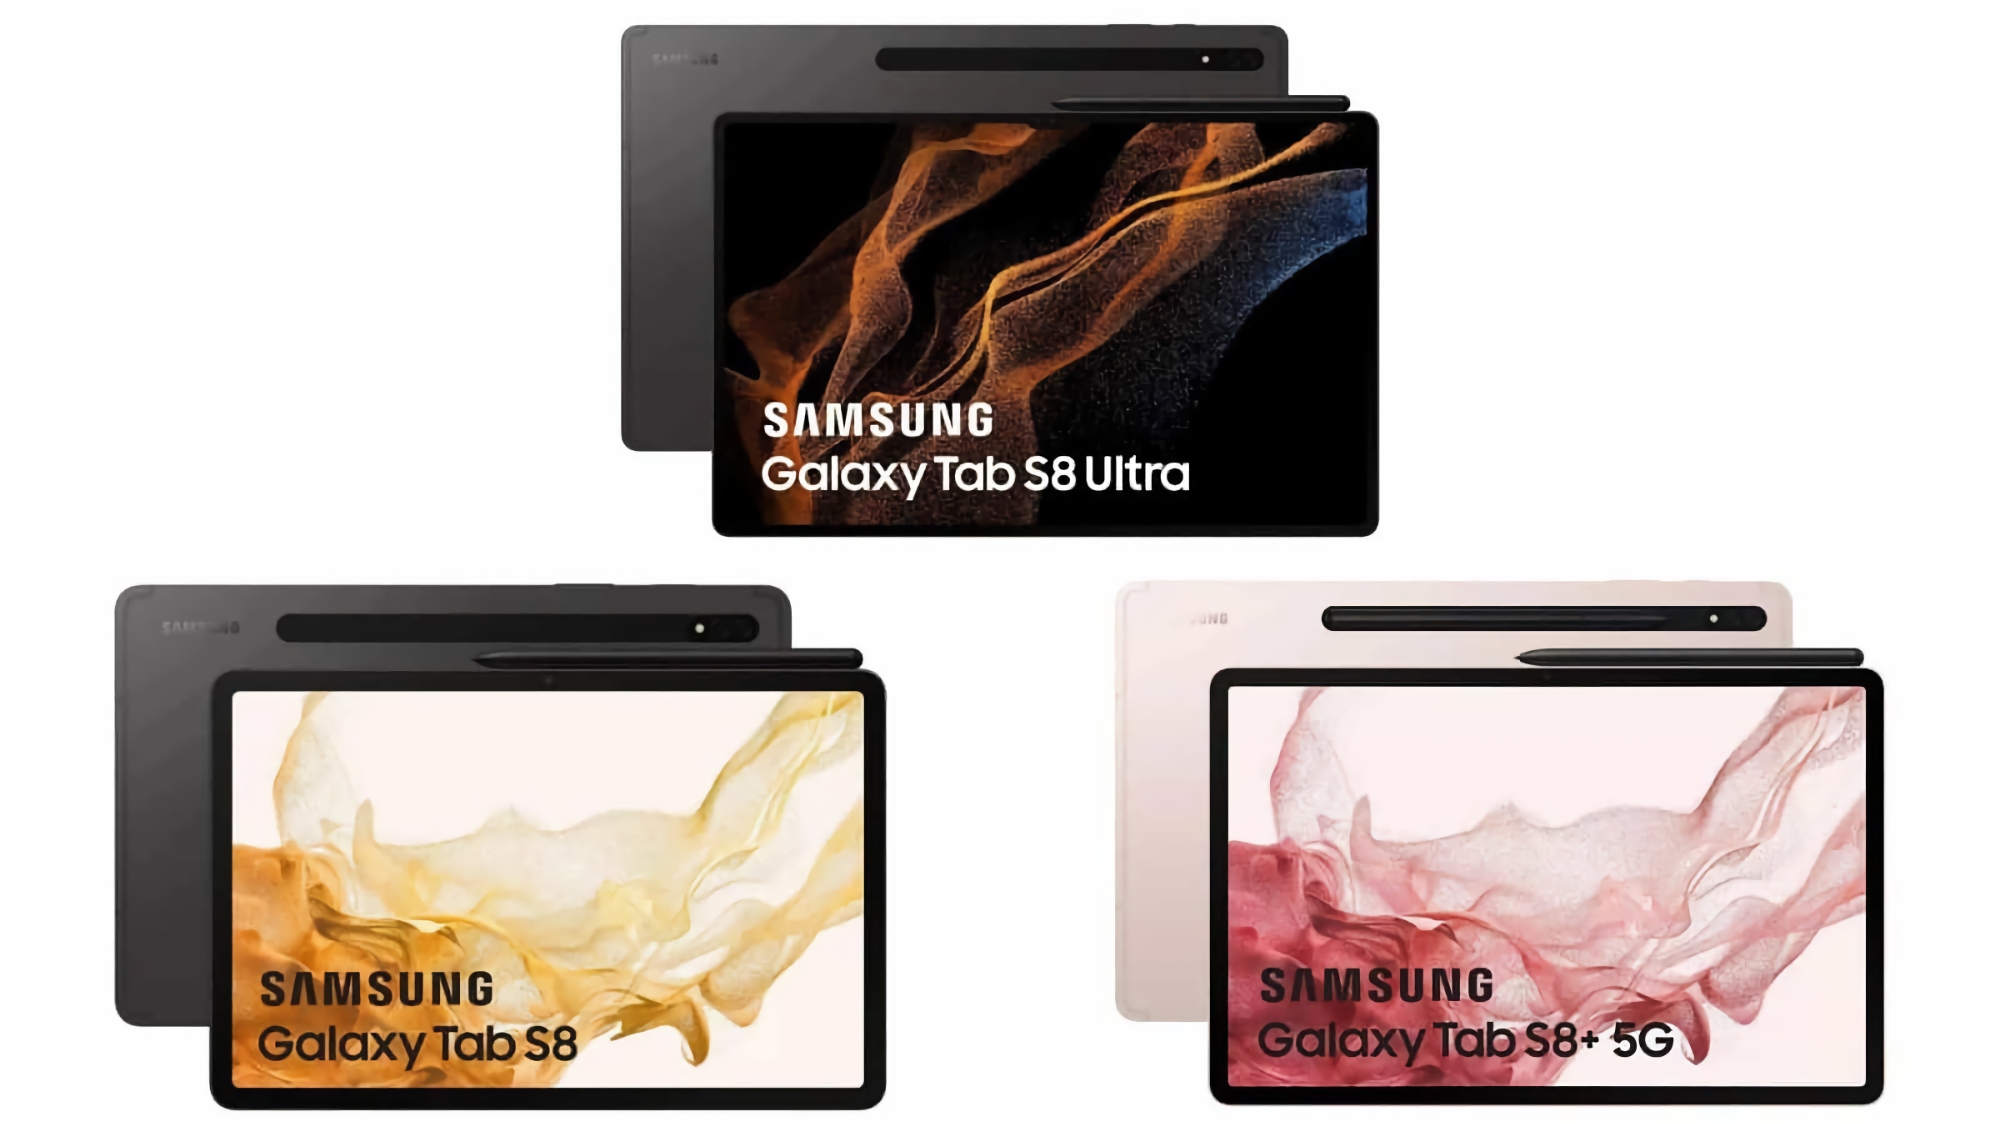 Ya no hace falta presentación: imágenes oficiales confirman las características de las Galaxy Tab S8, Galaxy Tab S8+ y Galaxy Tab S8 Ultra